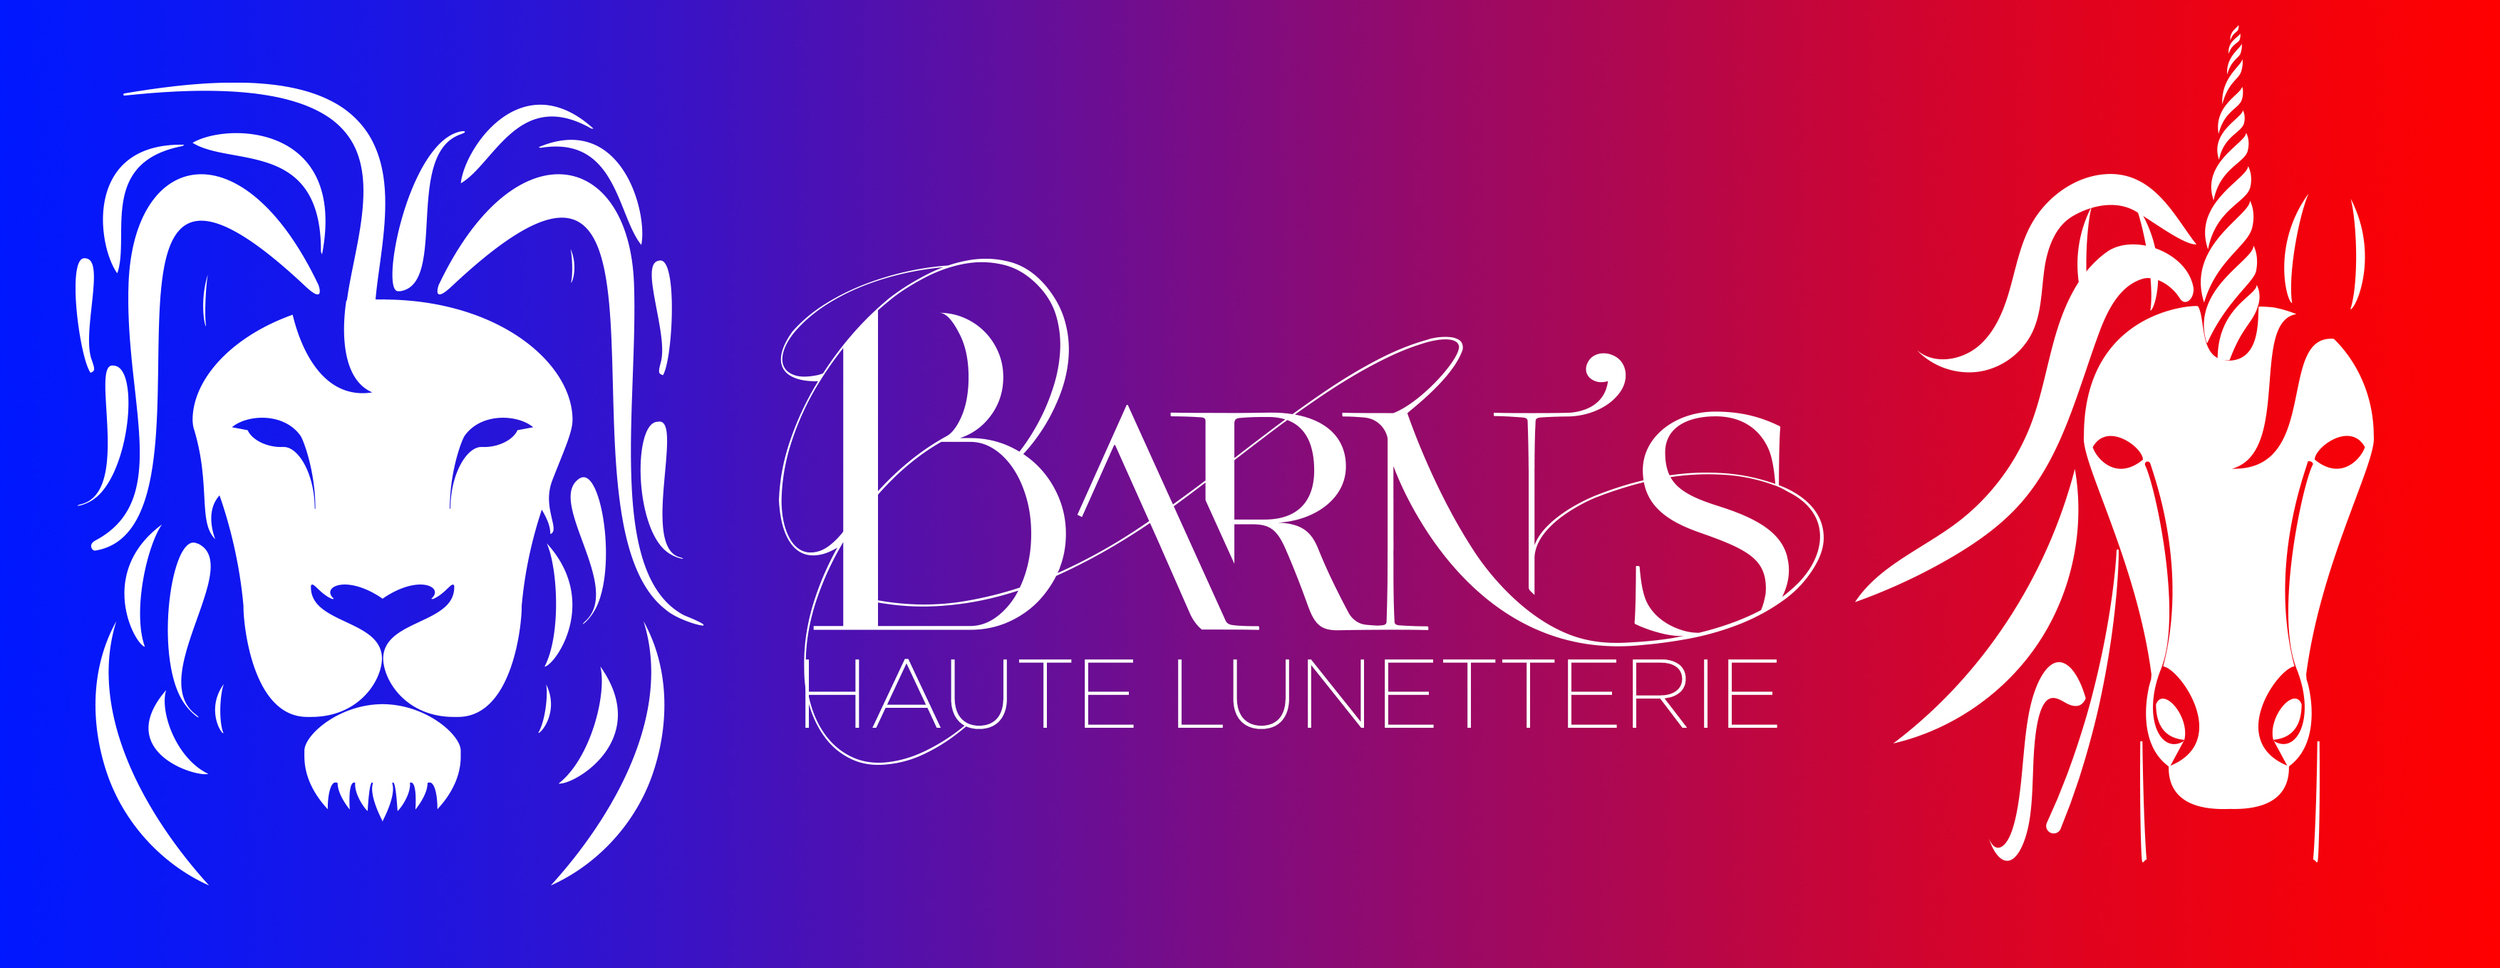 Barn's Haute Lunetterie